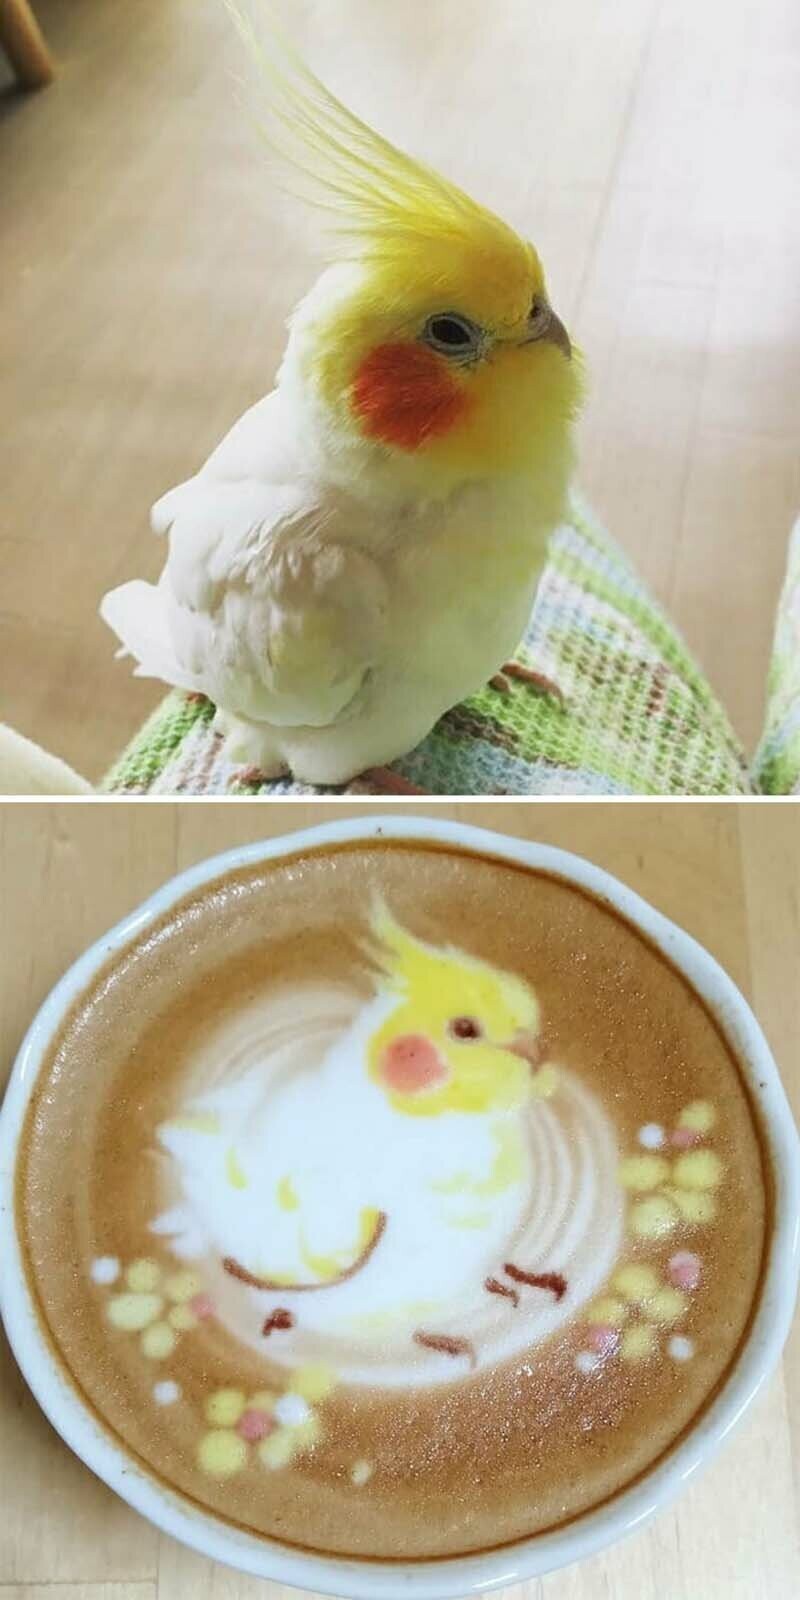 Потрясающие изображения птиц, выполненные на кофейной пене